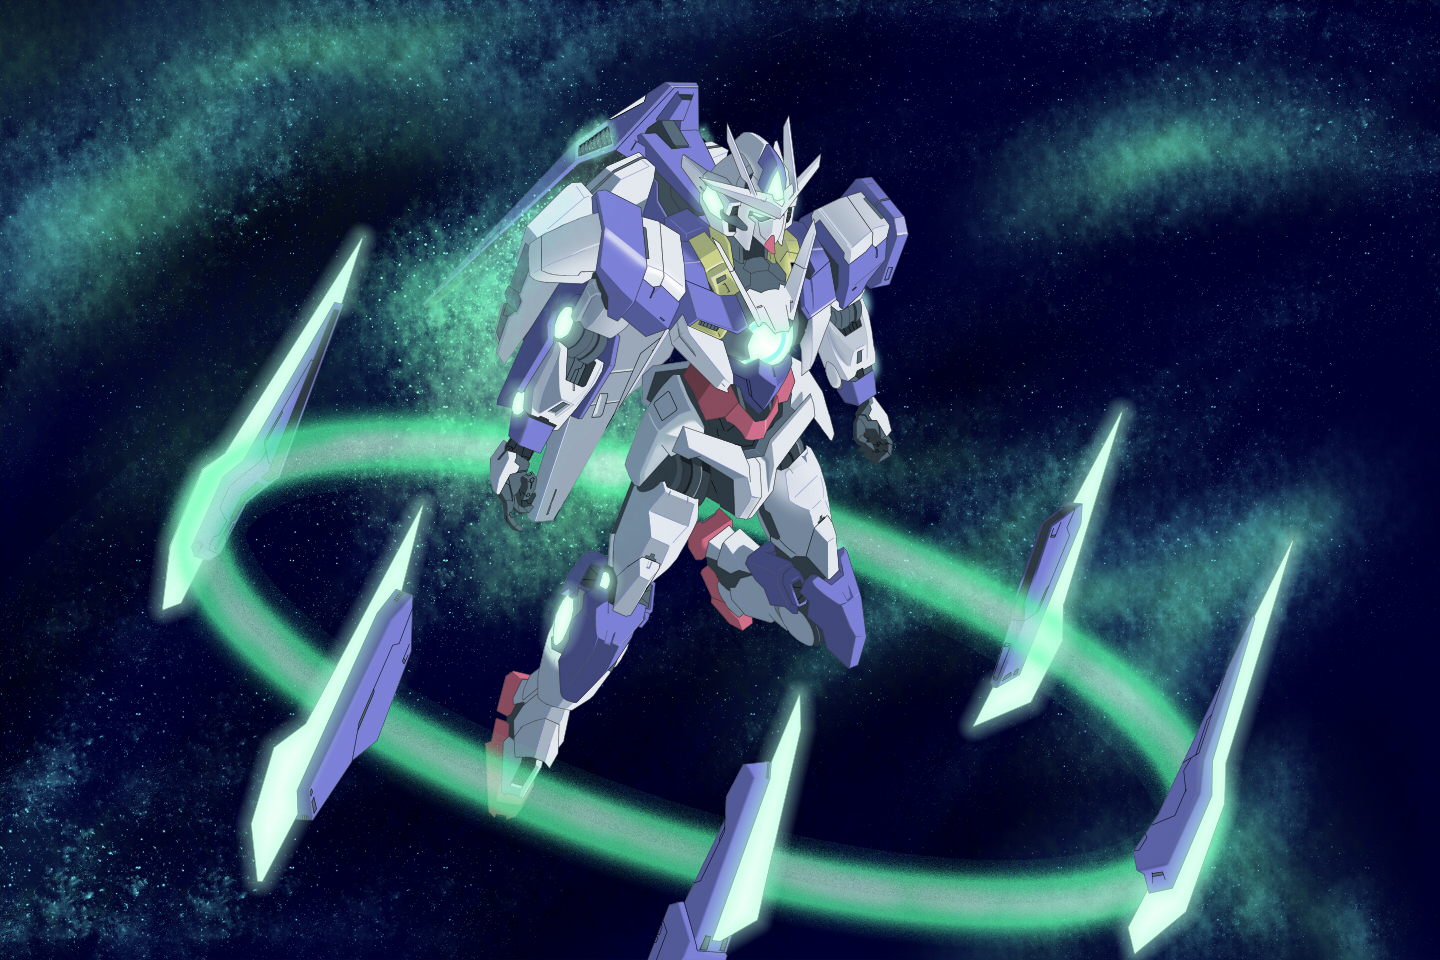 Anime Mech Gundam 00 Qan T Mobile Suit Gundam 00 Super Robot Wars Artwork Digital Art Fan Art 1440x960